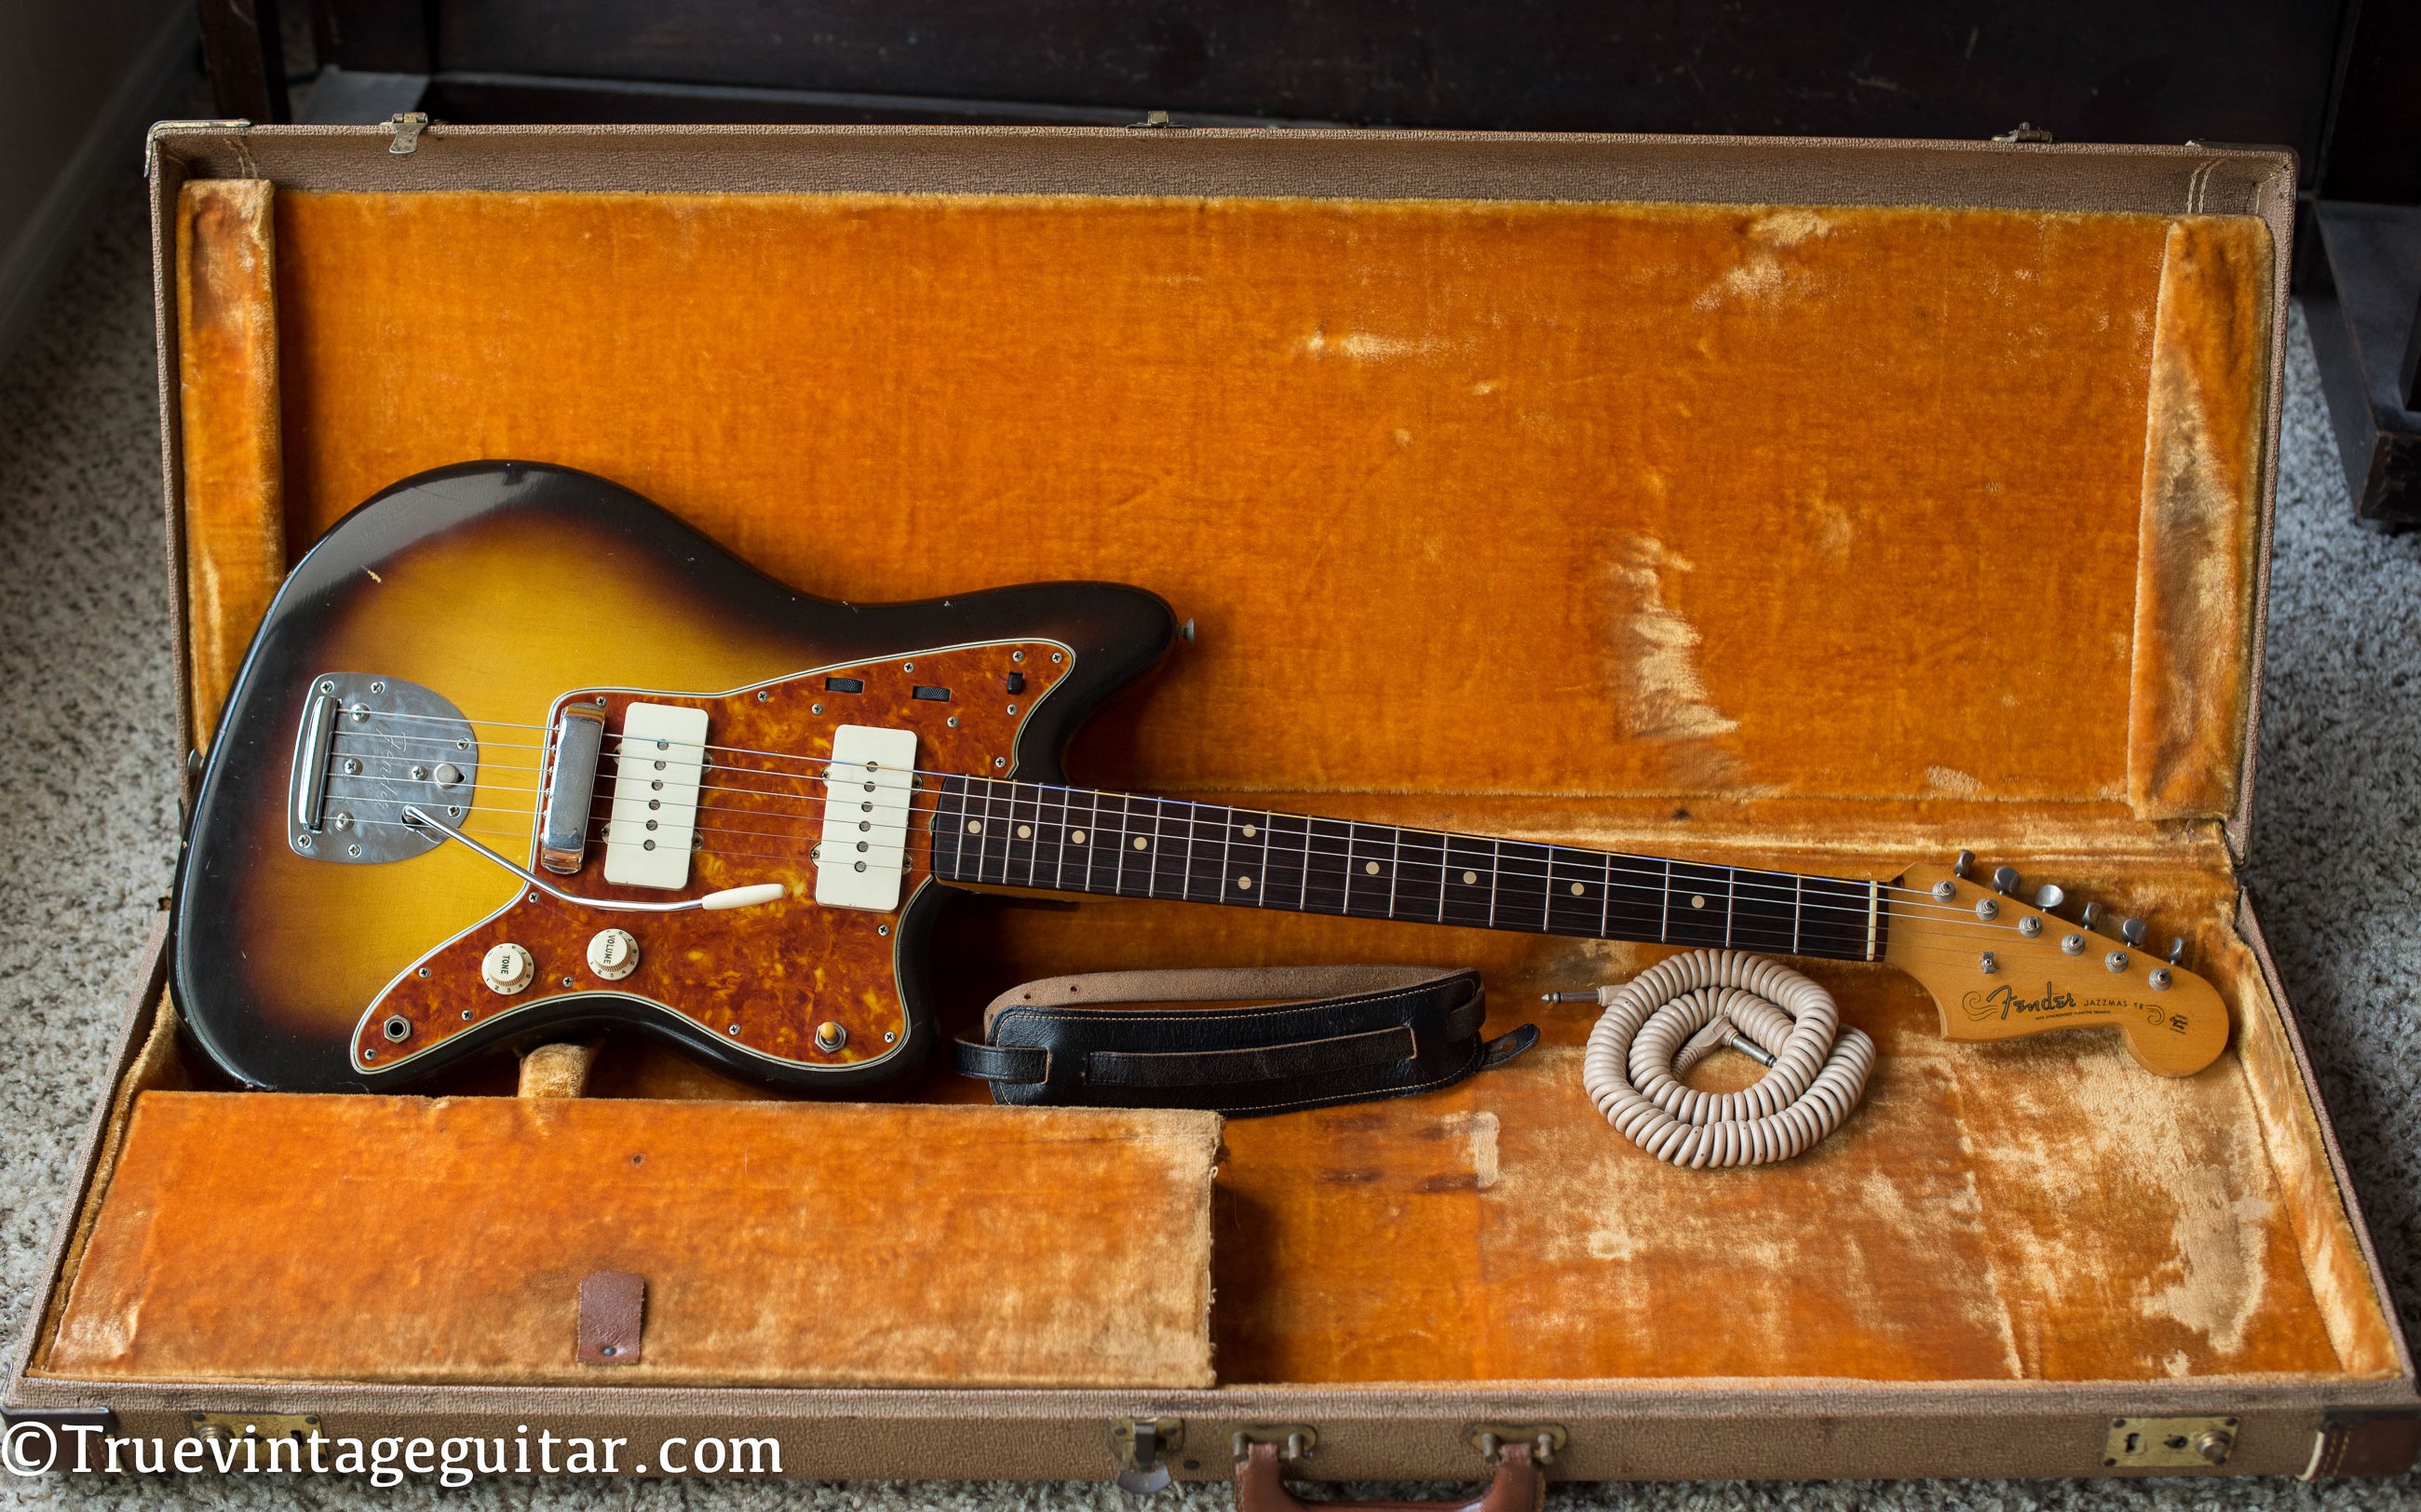 Vintage 1960 Fender Jazzmaster electric guitar